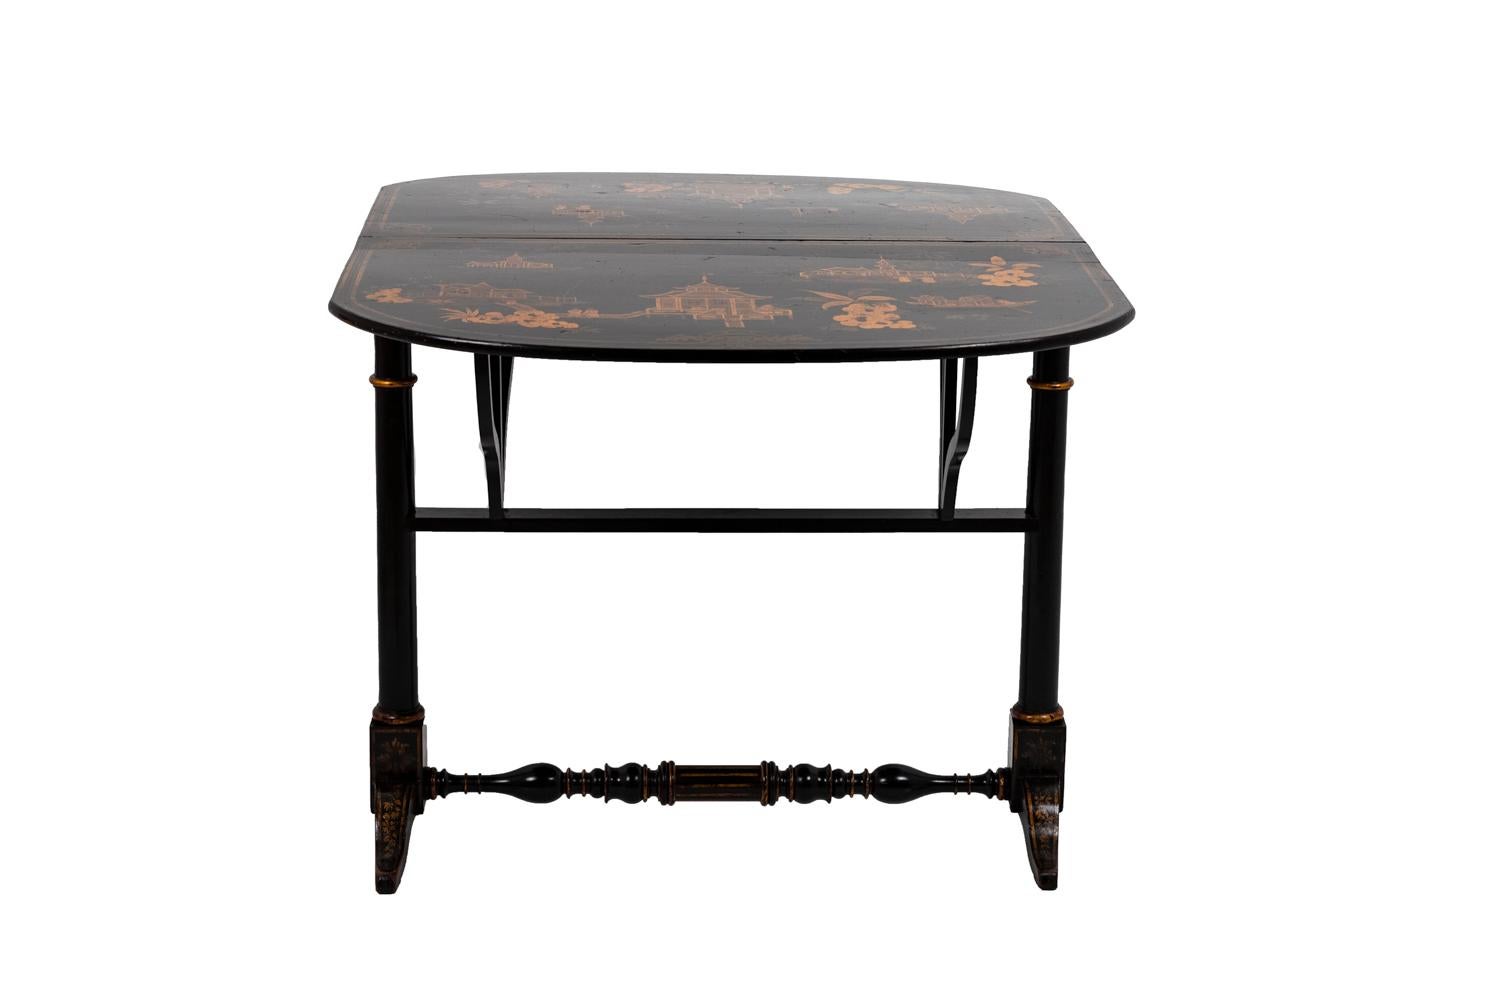 Tisch im chinesischen Stil aus schwarz lackiertem Holz mit vergoldetem Dekor. Zwei Blätter mit großen Kartuschen, die Landschaftsszenen im chinesischen Stil mit Pagoden, Dschunken usw. einrahmen. Sie stehen auf zwei geraden, zweibeinigen Beinen, die